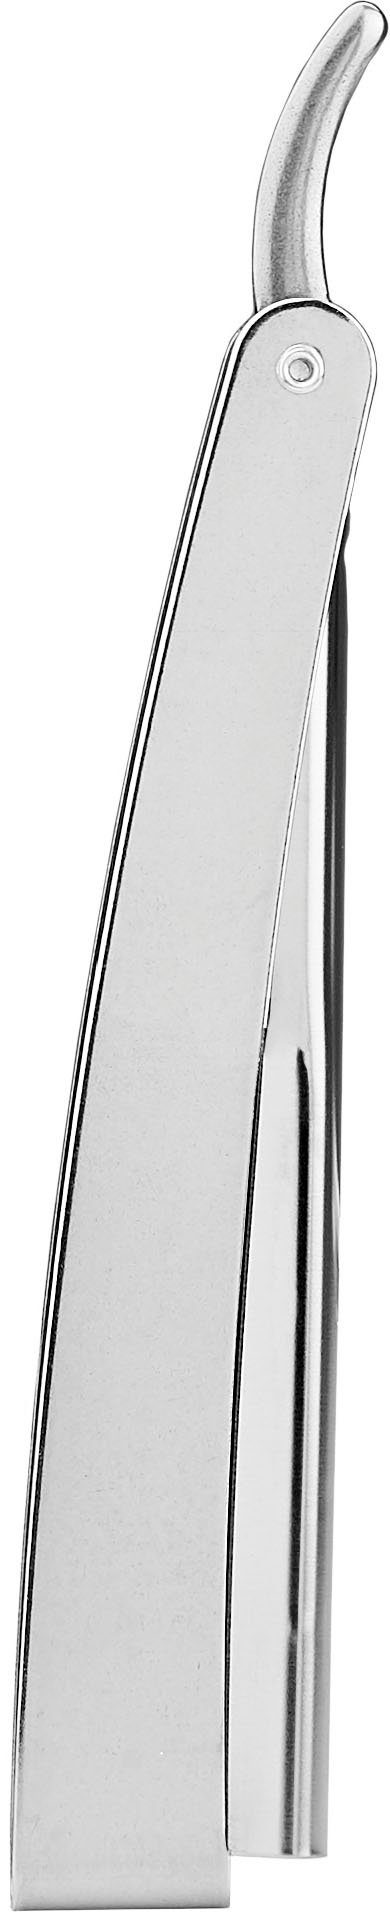 praktischem silberfarben, Rasiermesser Rasiermesser FRIPAC Klappgriff mit 1955